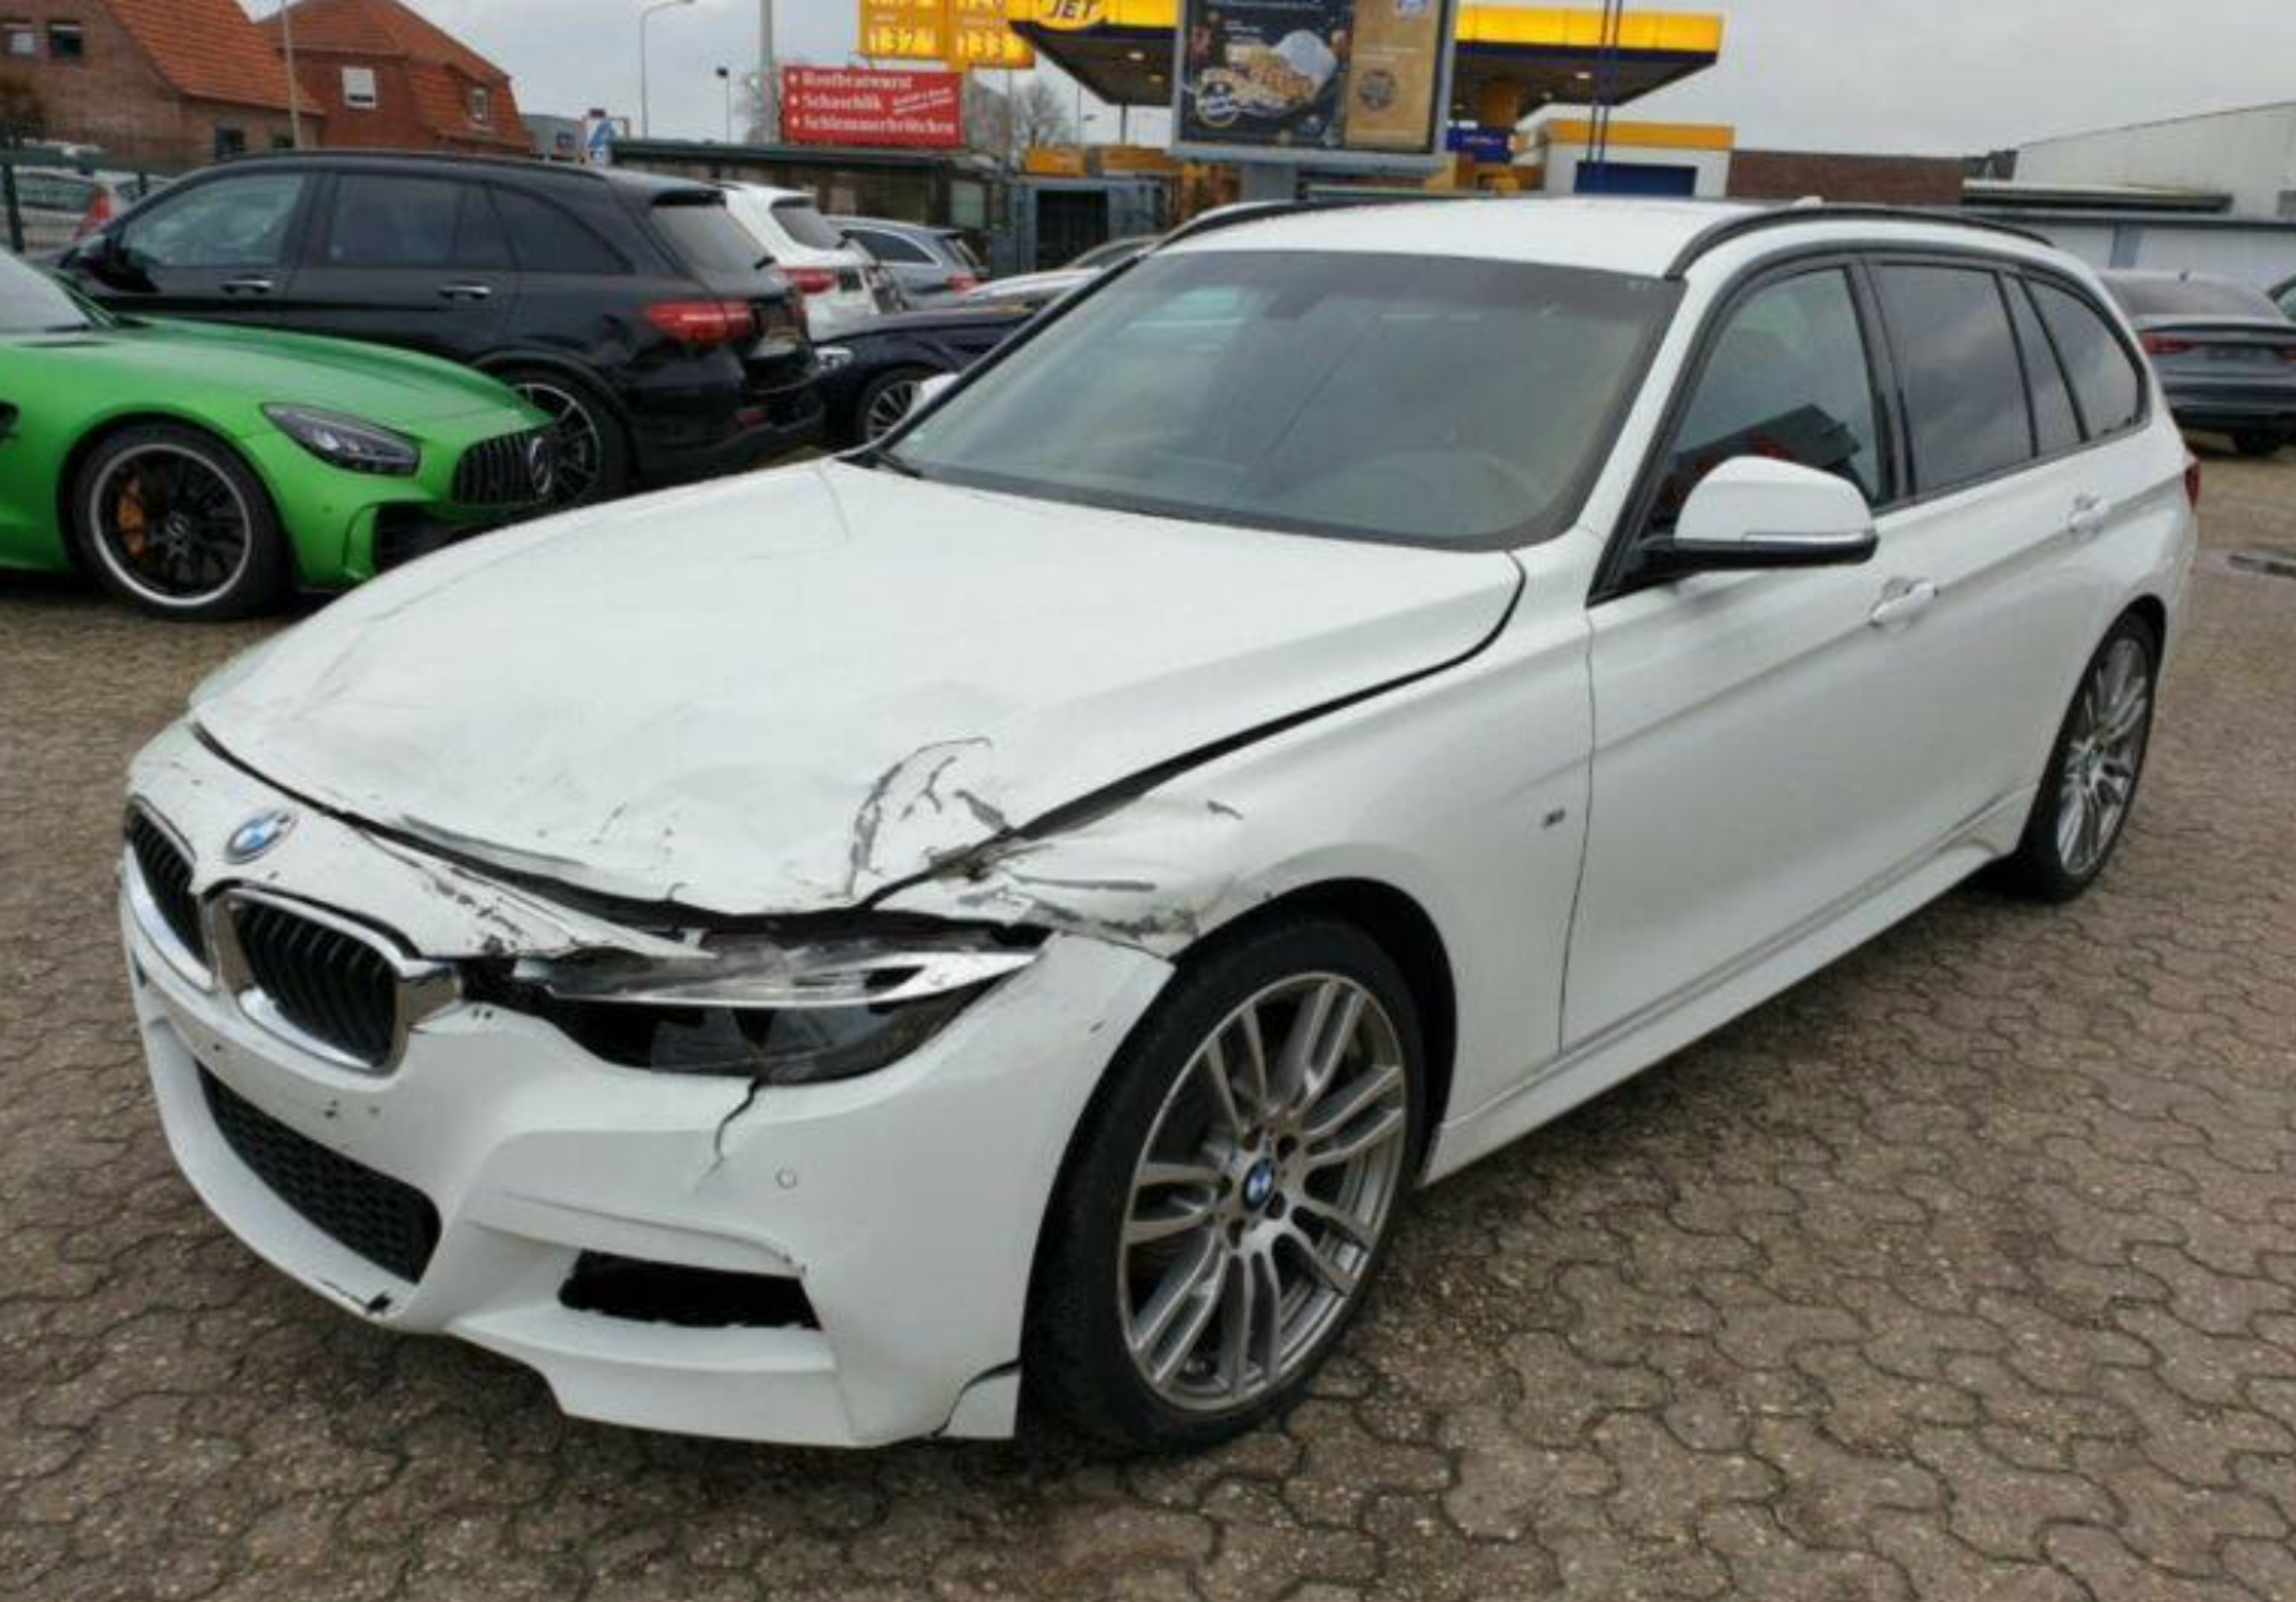 BMW après un accident, fracassé l'avant d'une voiture, véhicule endommagé